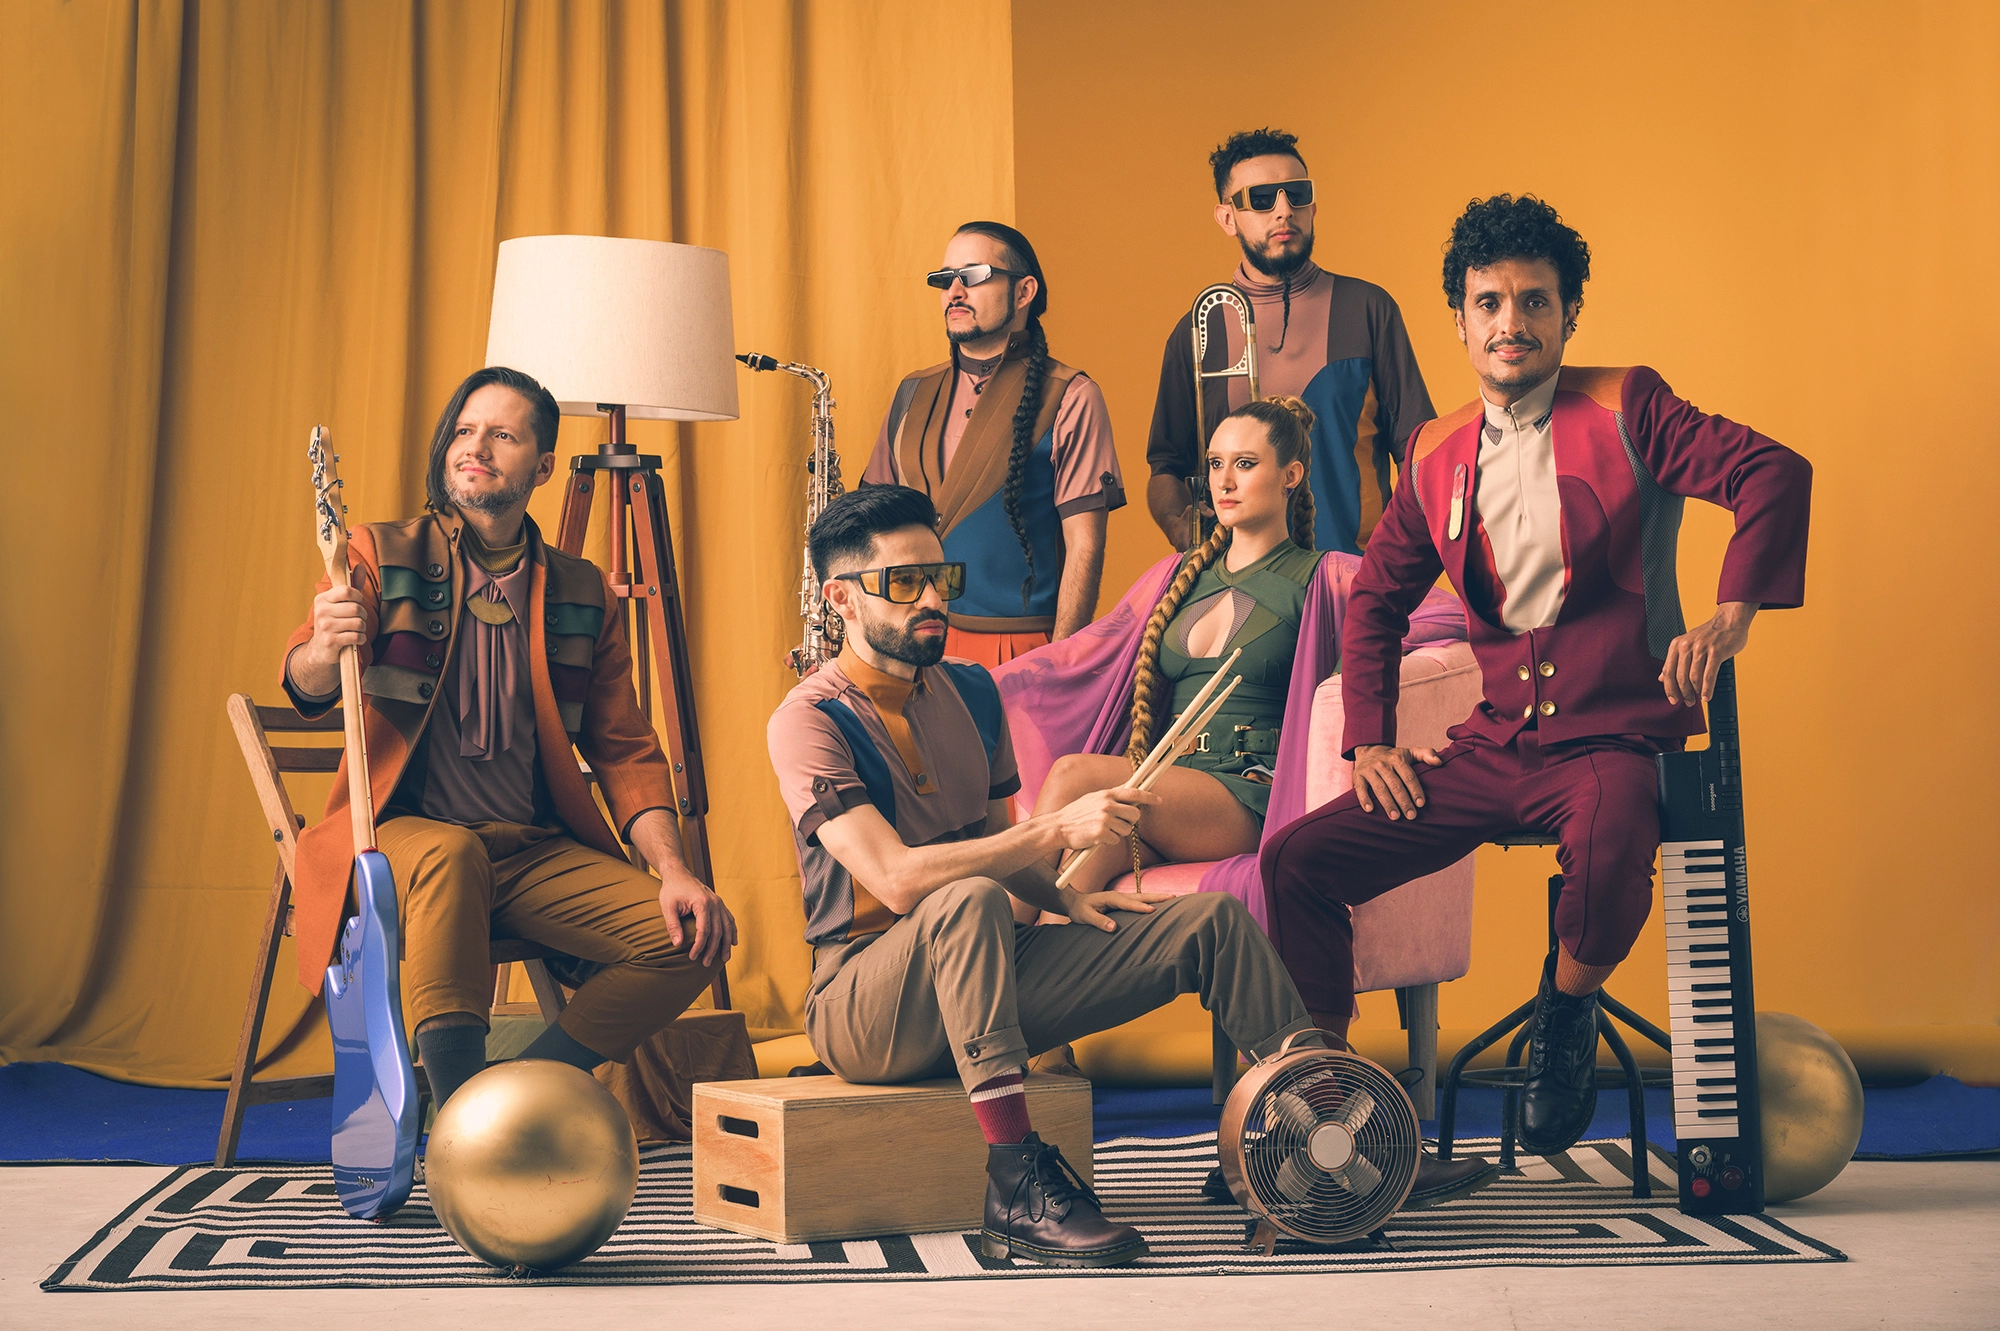 Photo du groupe Puerto Candelaria. Les six membres du groupe sont présents dans une salle aux teintes orangées. Ils sont habillés avec des vêtements colorés, aux styles modernes et créatifs. Chacun tient son instrument de musique entre ses mains.